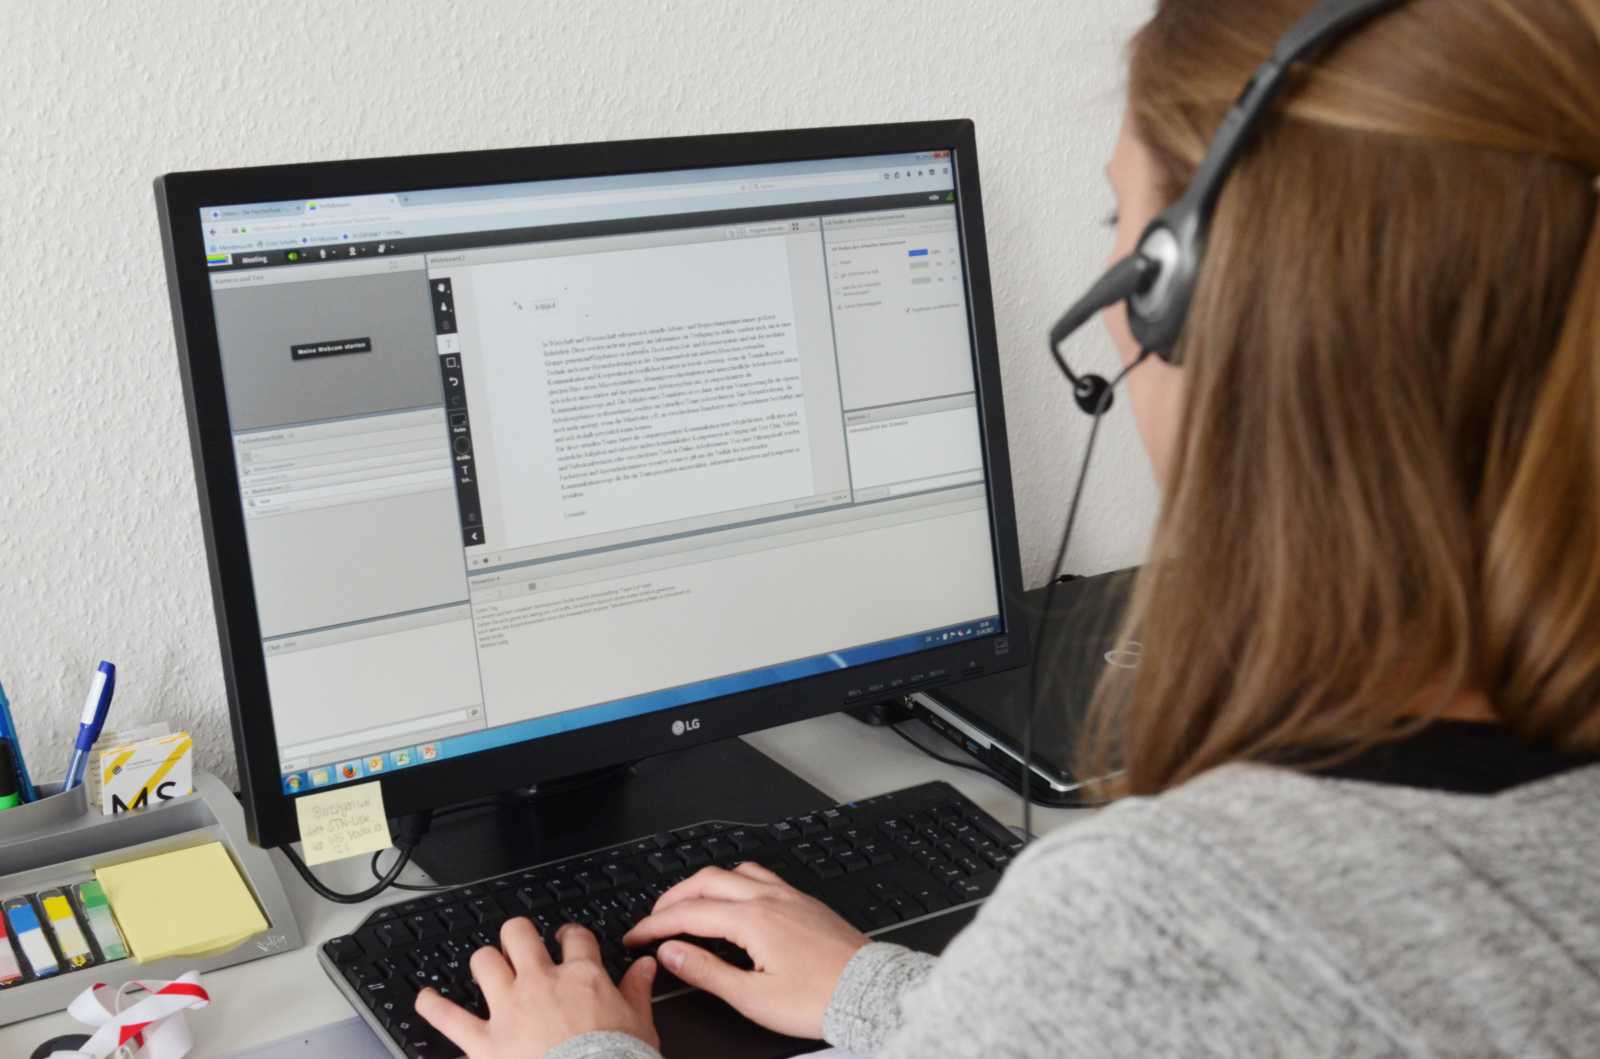 Komplett am PC: Die Teilnehmer der eLearning-Veranstaltung „Team 2.0“ üben sich in computergestützter Kommunikation im virtuellen Raum. (Foto: FH Münster/Pressestelle)